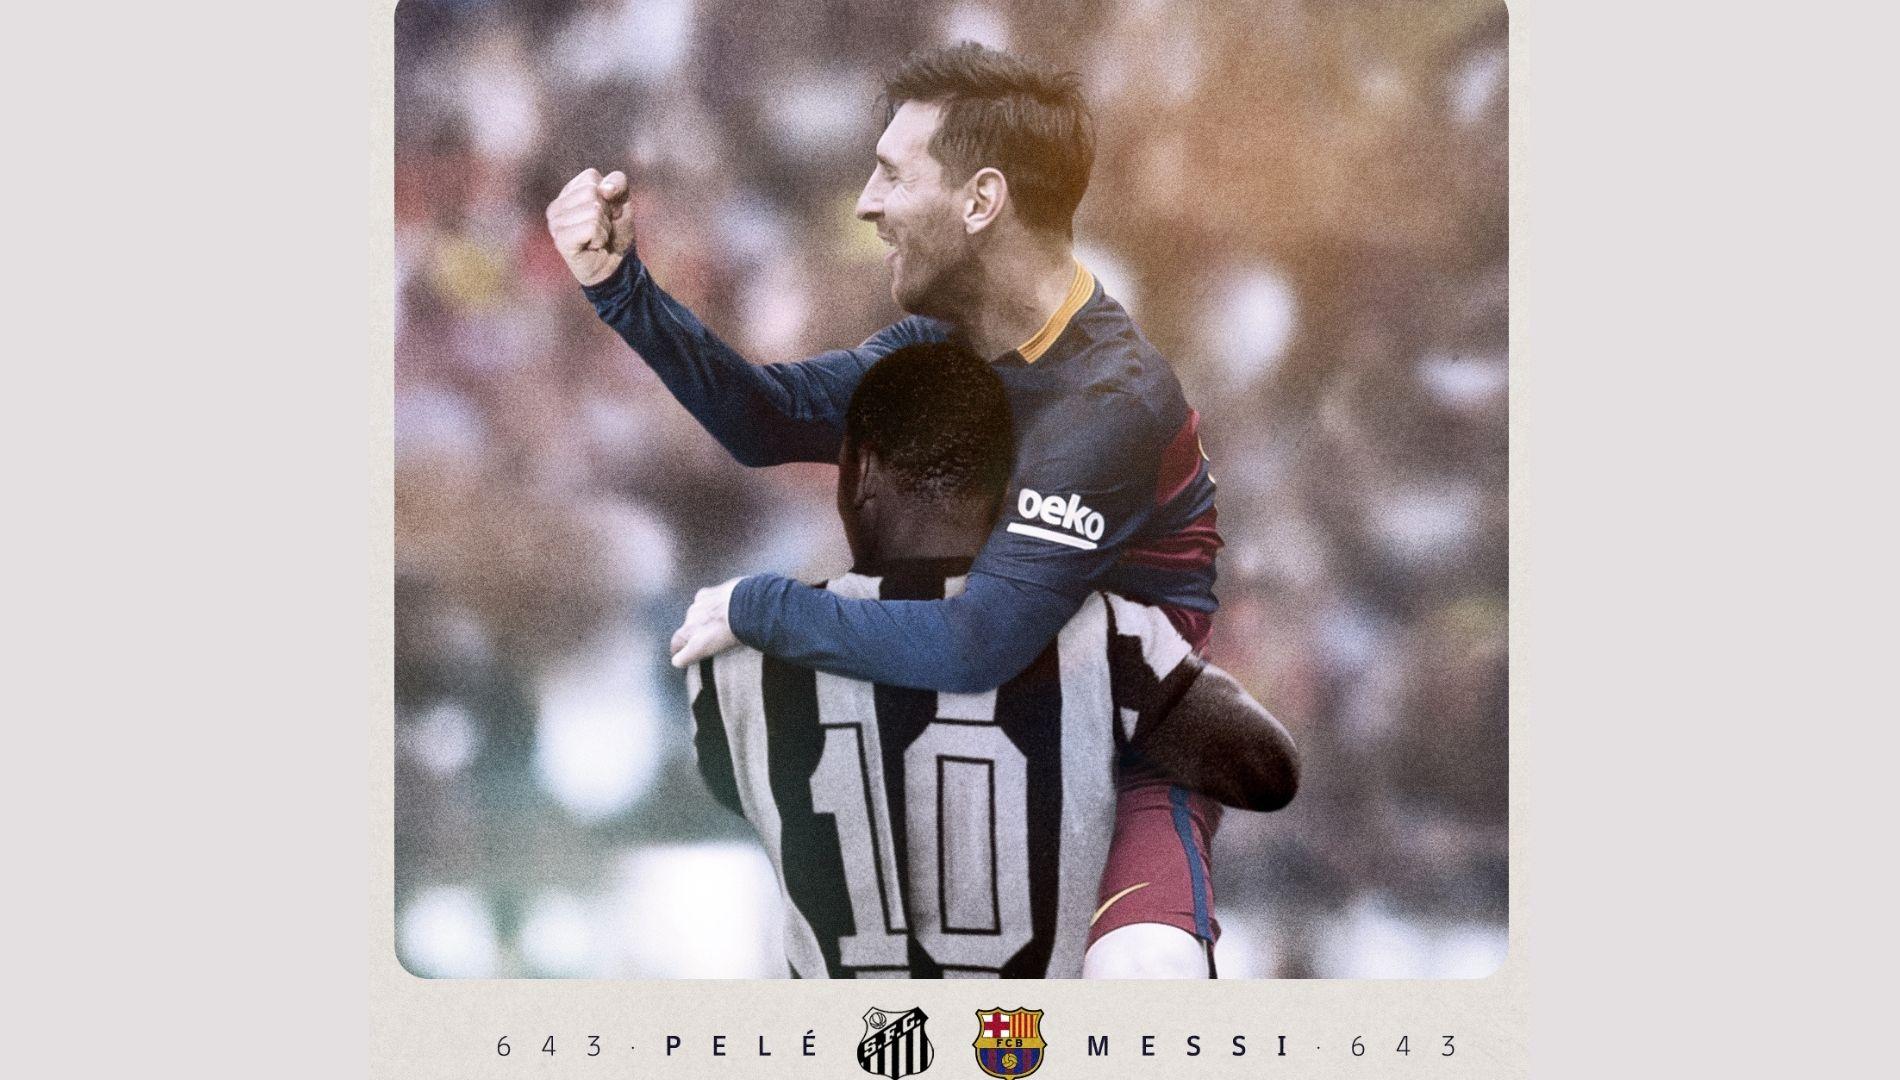 Imagem publicada pelo Barcelona junta Pelé e Messi, recordistas de gols por um mesmo clube em jogos oficiais.